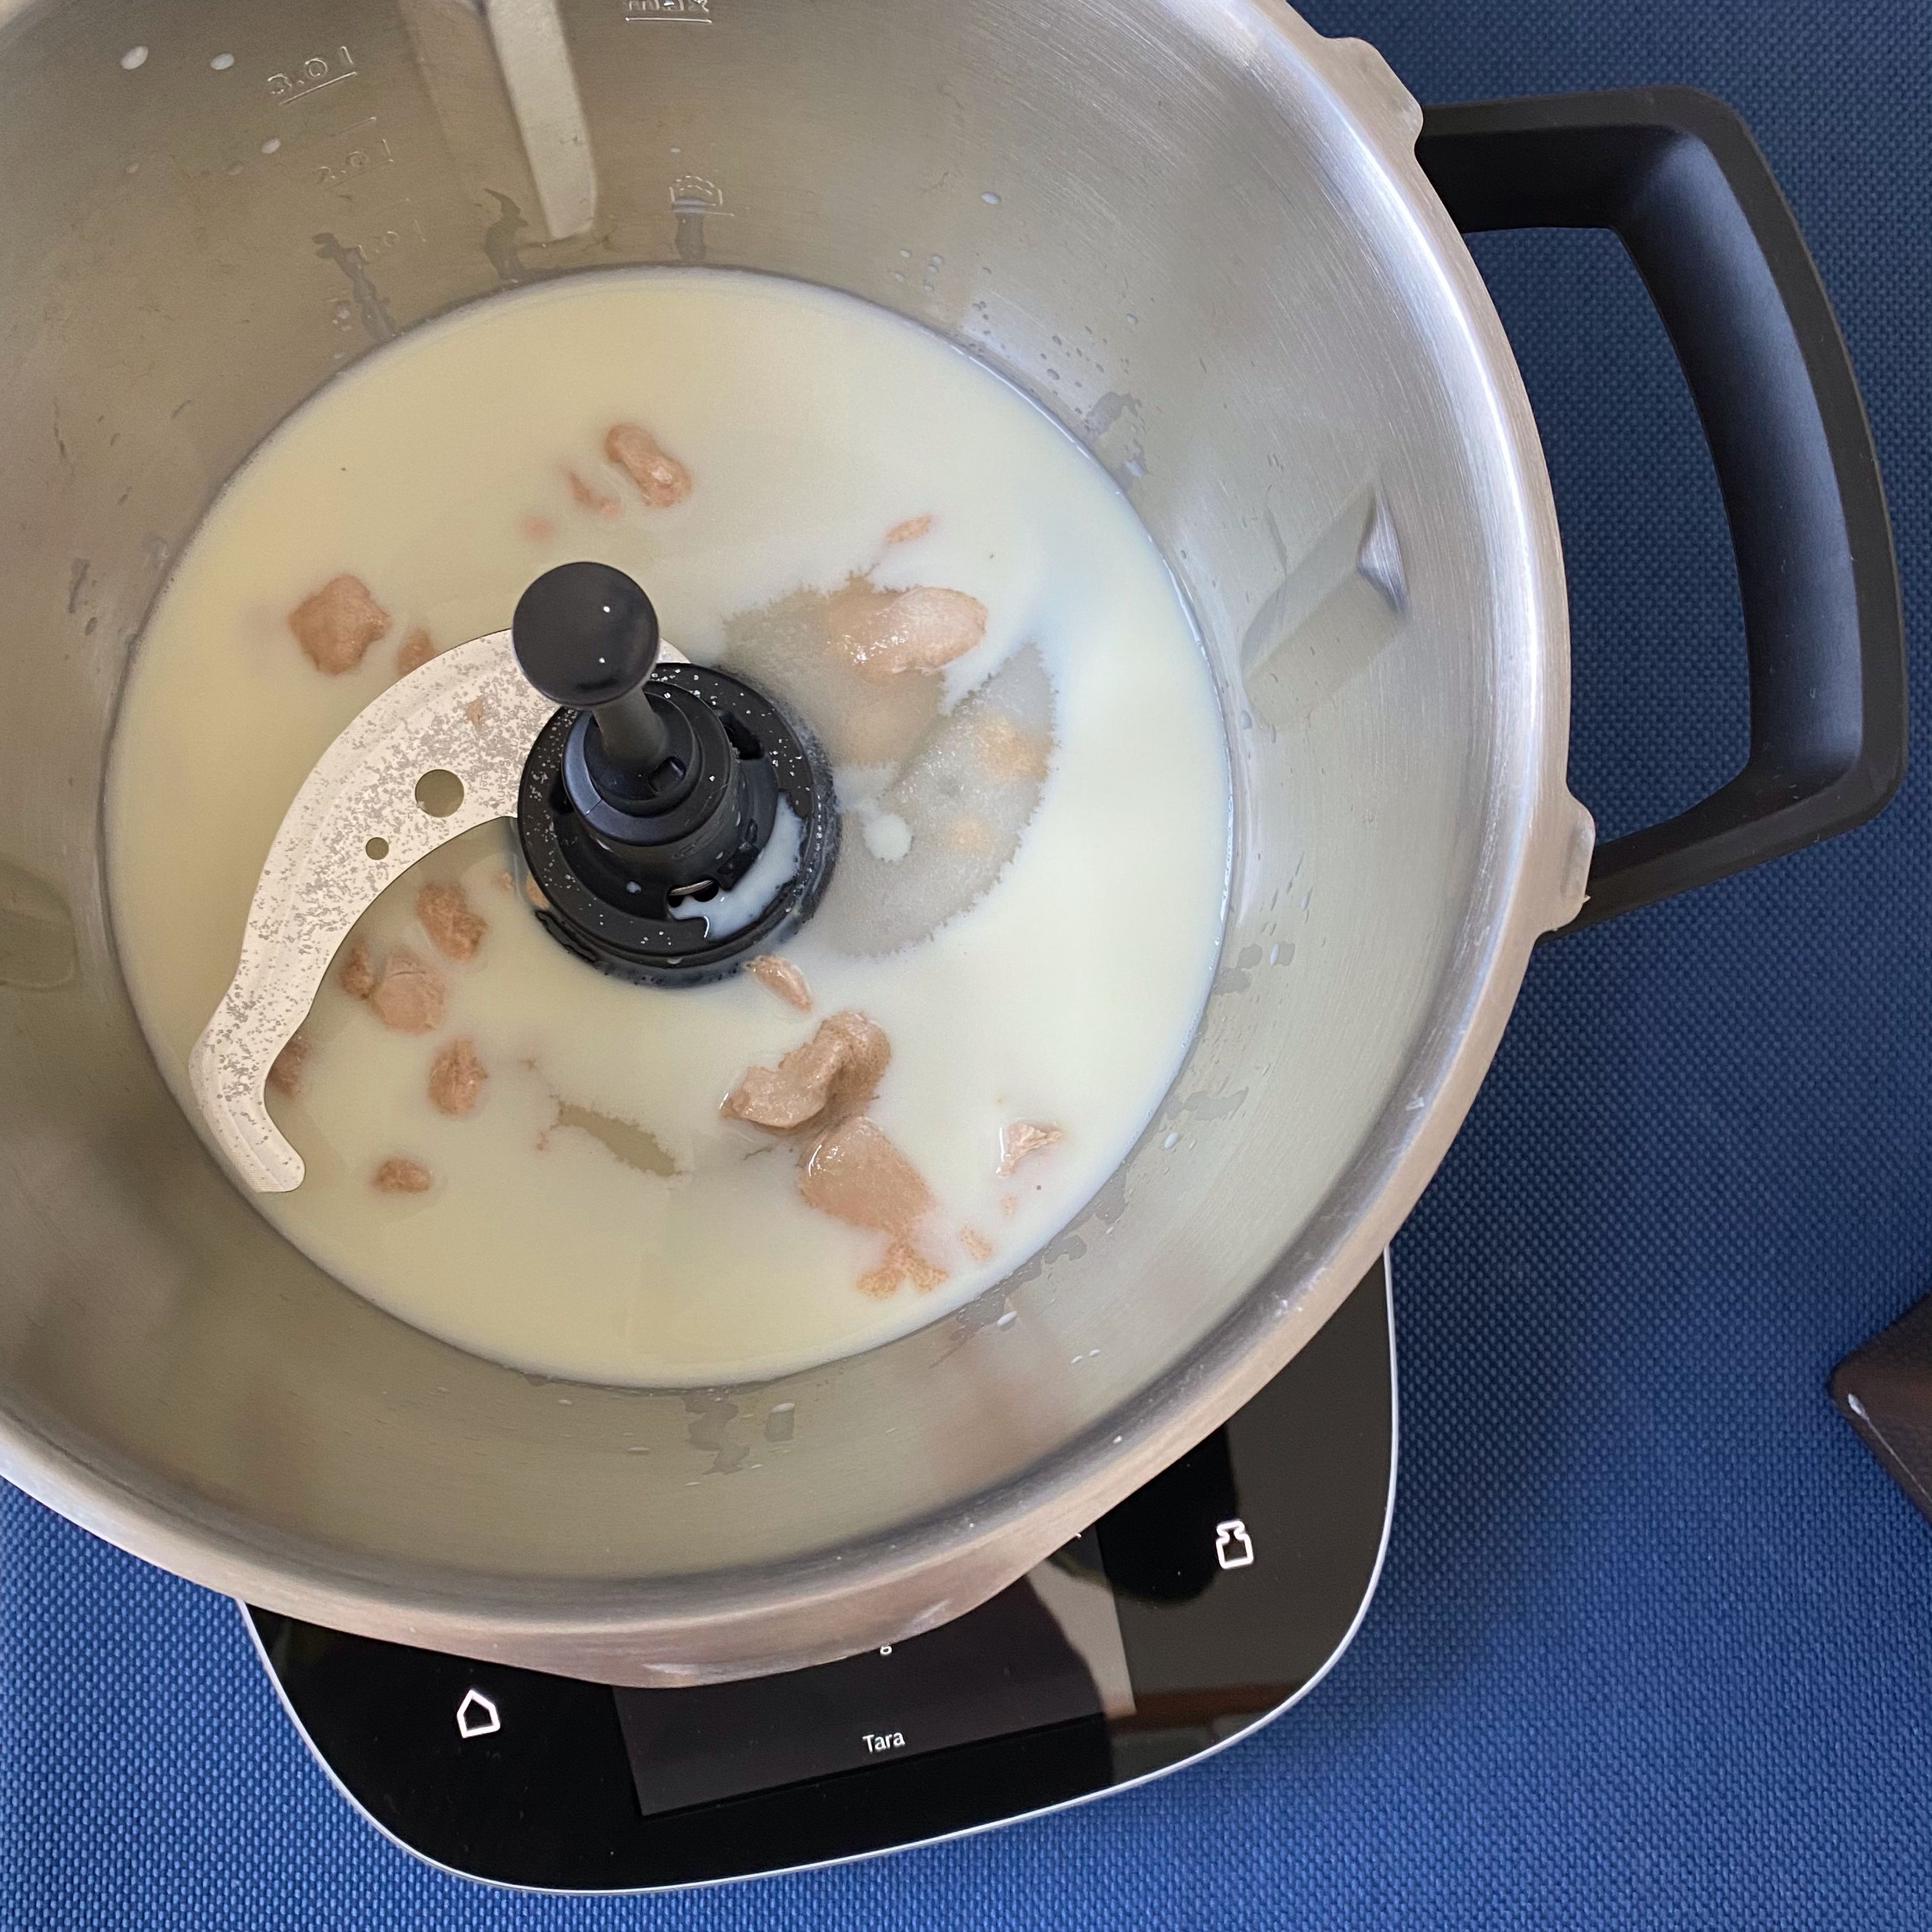 Cookit Universalmesser einsetzen. Hefe, Milch und Zucker in den Cookit einwiegen und vermischen (Universalmesser | Stufe 5 | 37°C | 3 Min.).